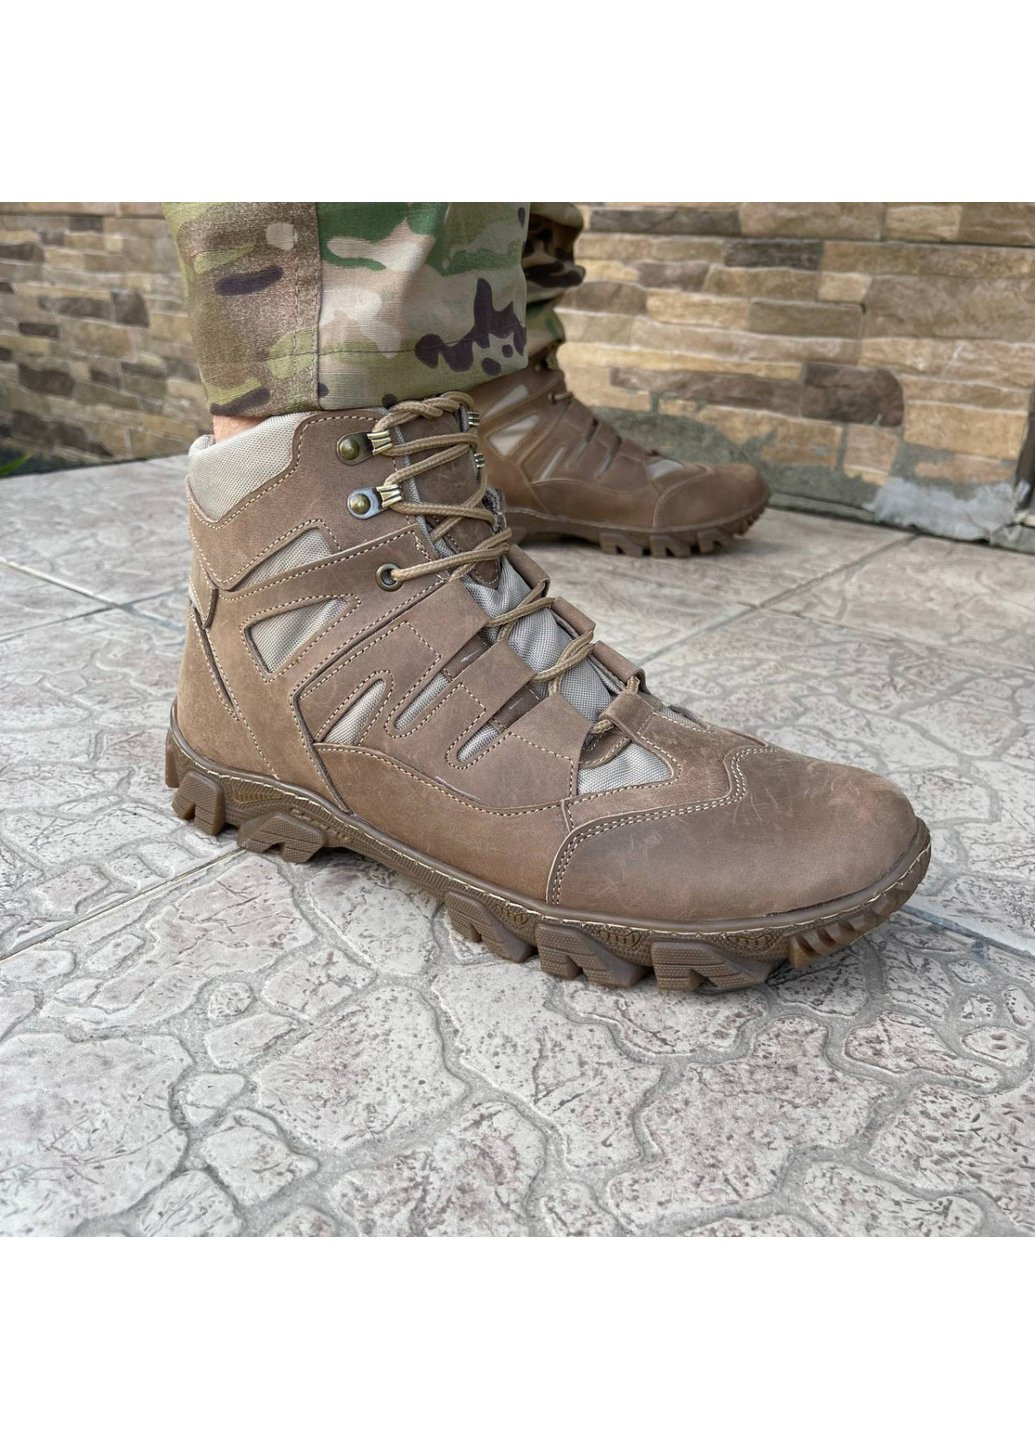 Коричневые осенние ботинки военные тактические всу (зсу) 7527 42 р 27,5 см коричневые Power